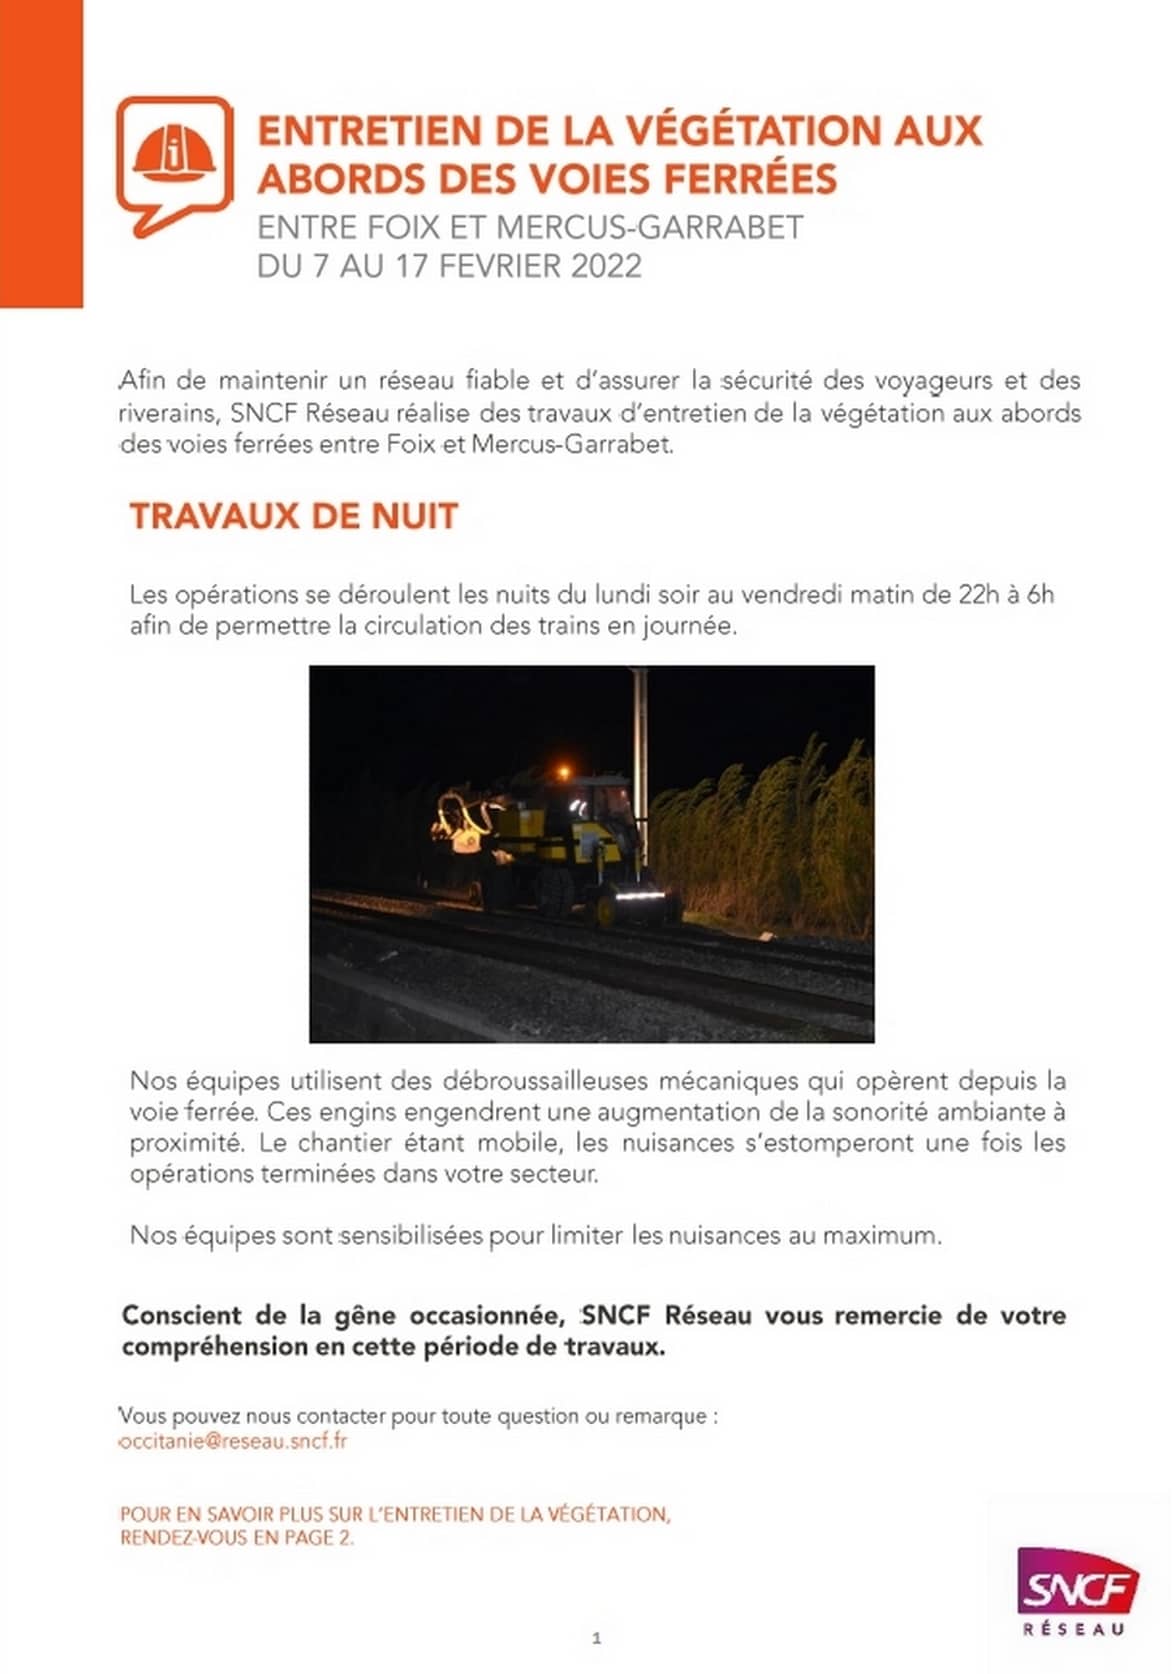 070222 - SNCF Entretien Vegetaux Voies Ferrees P1